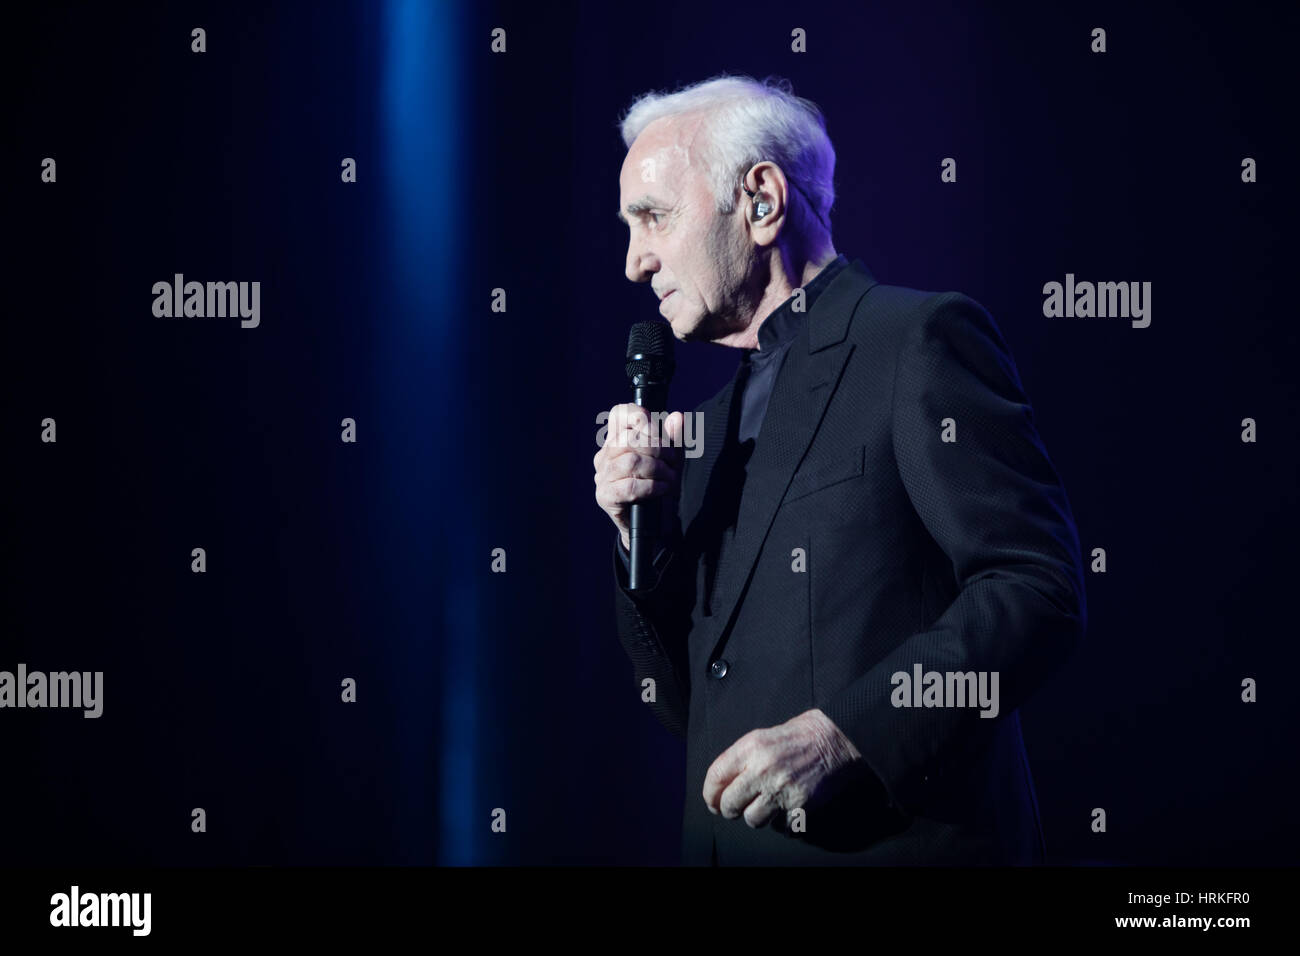 Les concerts du chanteur français Charles Aznavour à l'arène d'OPE, Lisbonne, Portugal. Banque D'Images